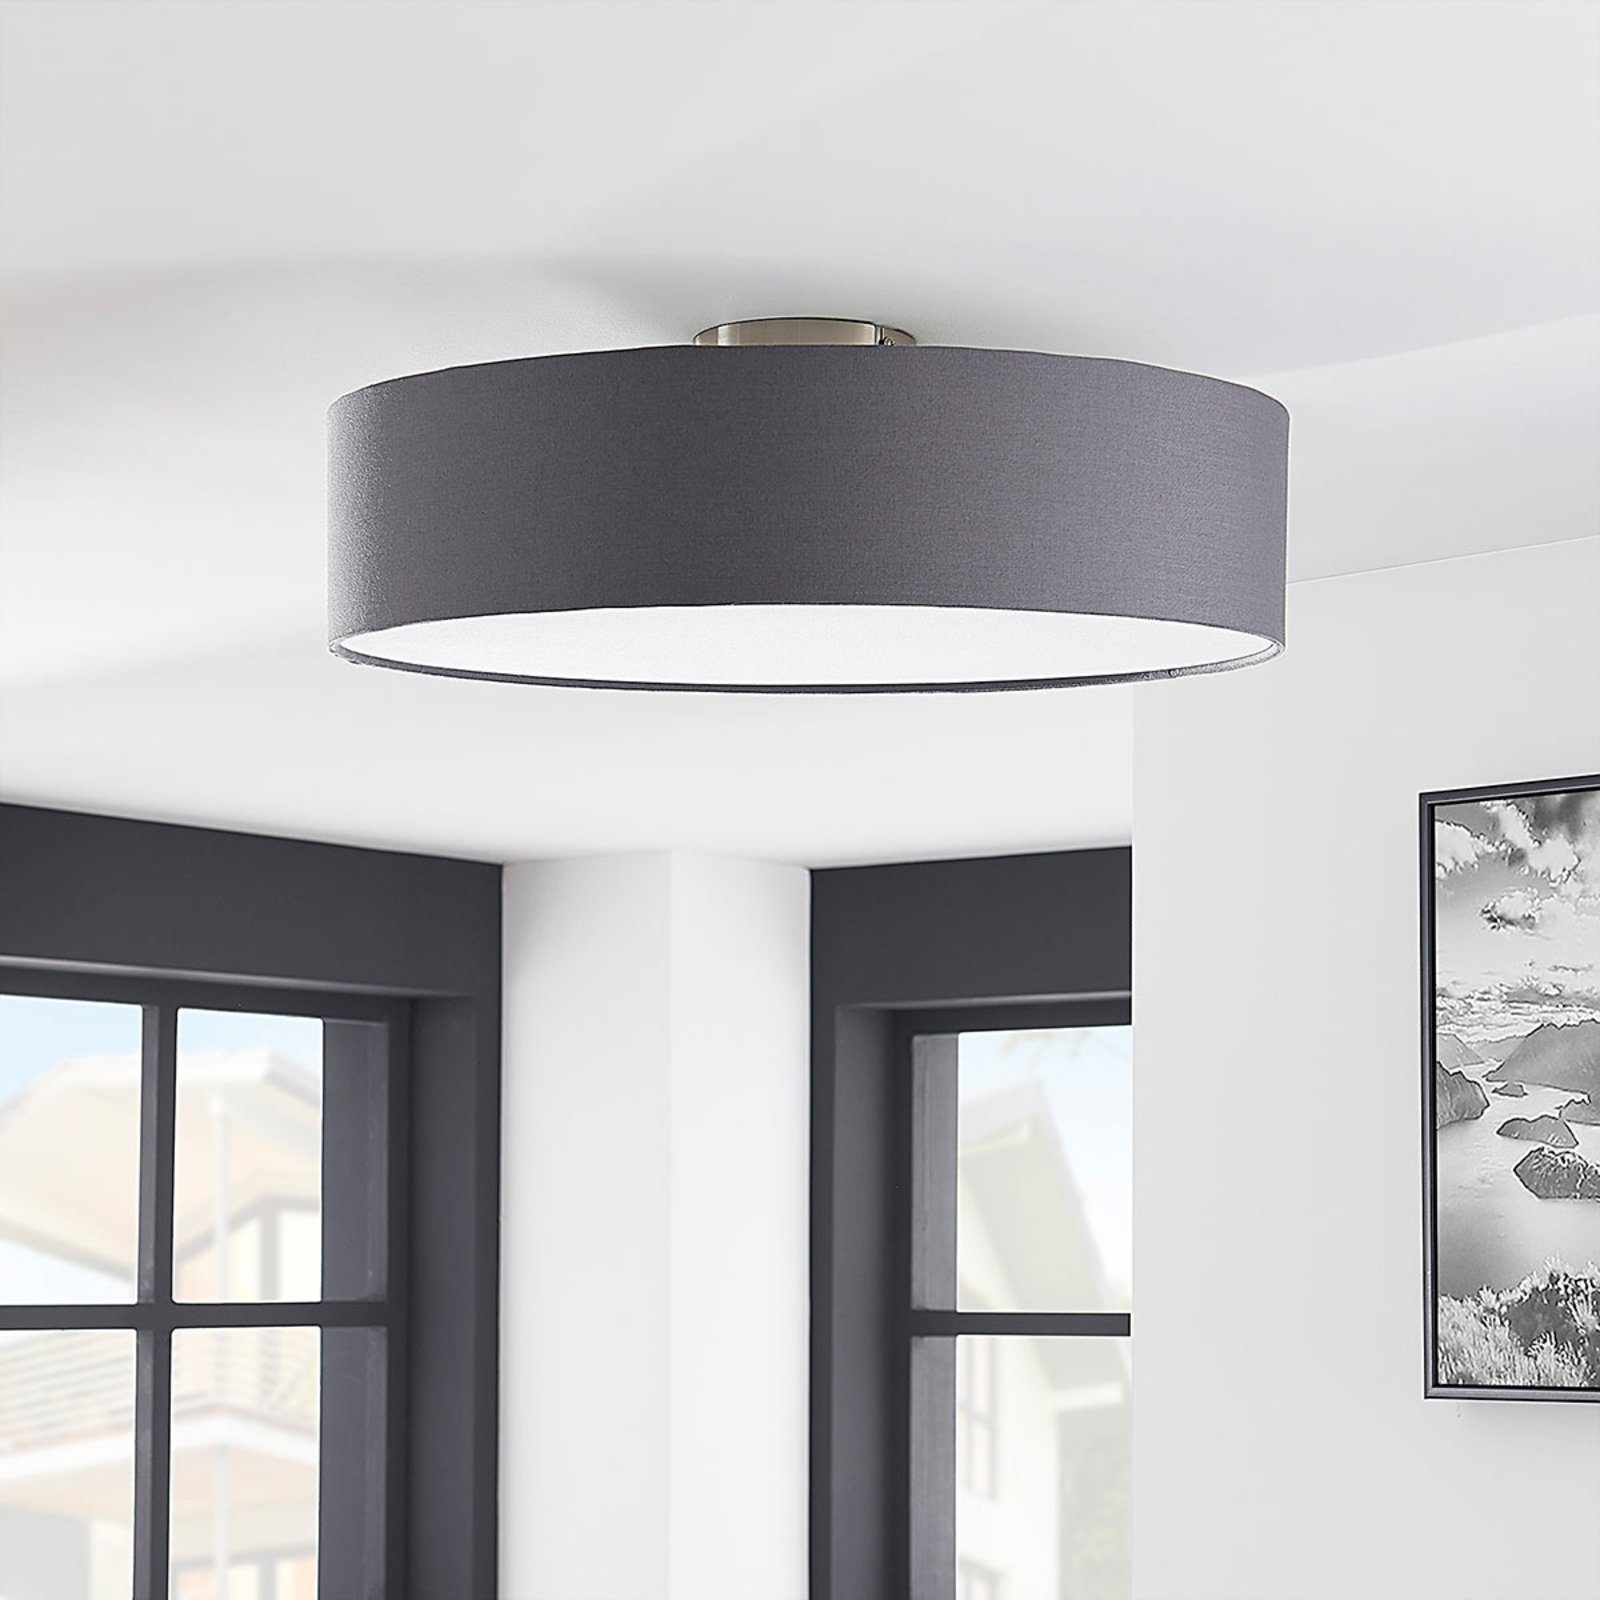 Sebatin ceiling light for E27, 50 cm, grey